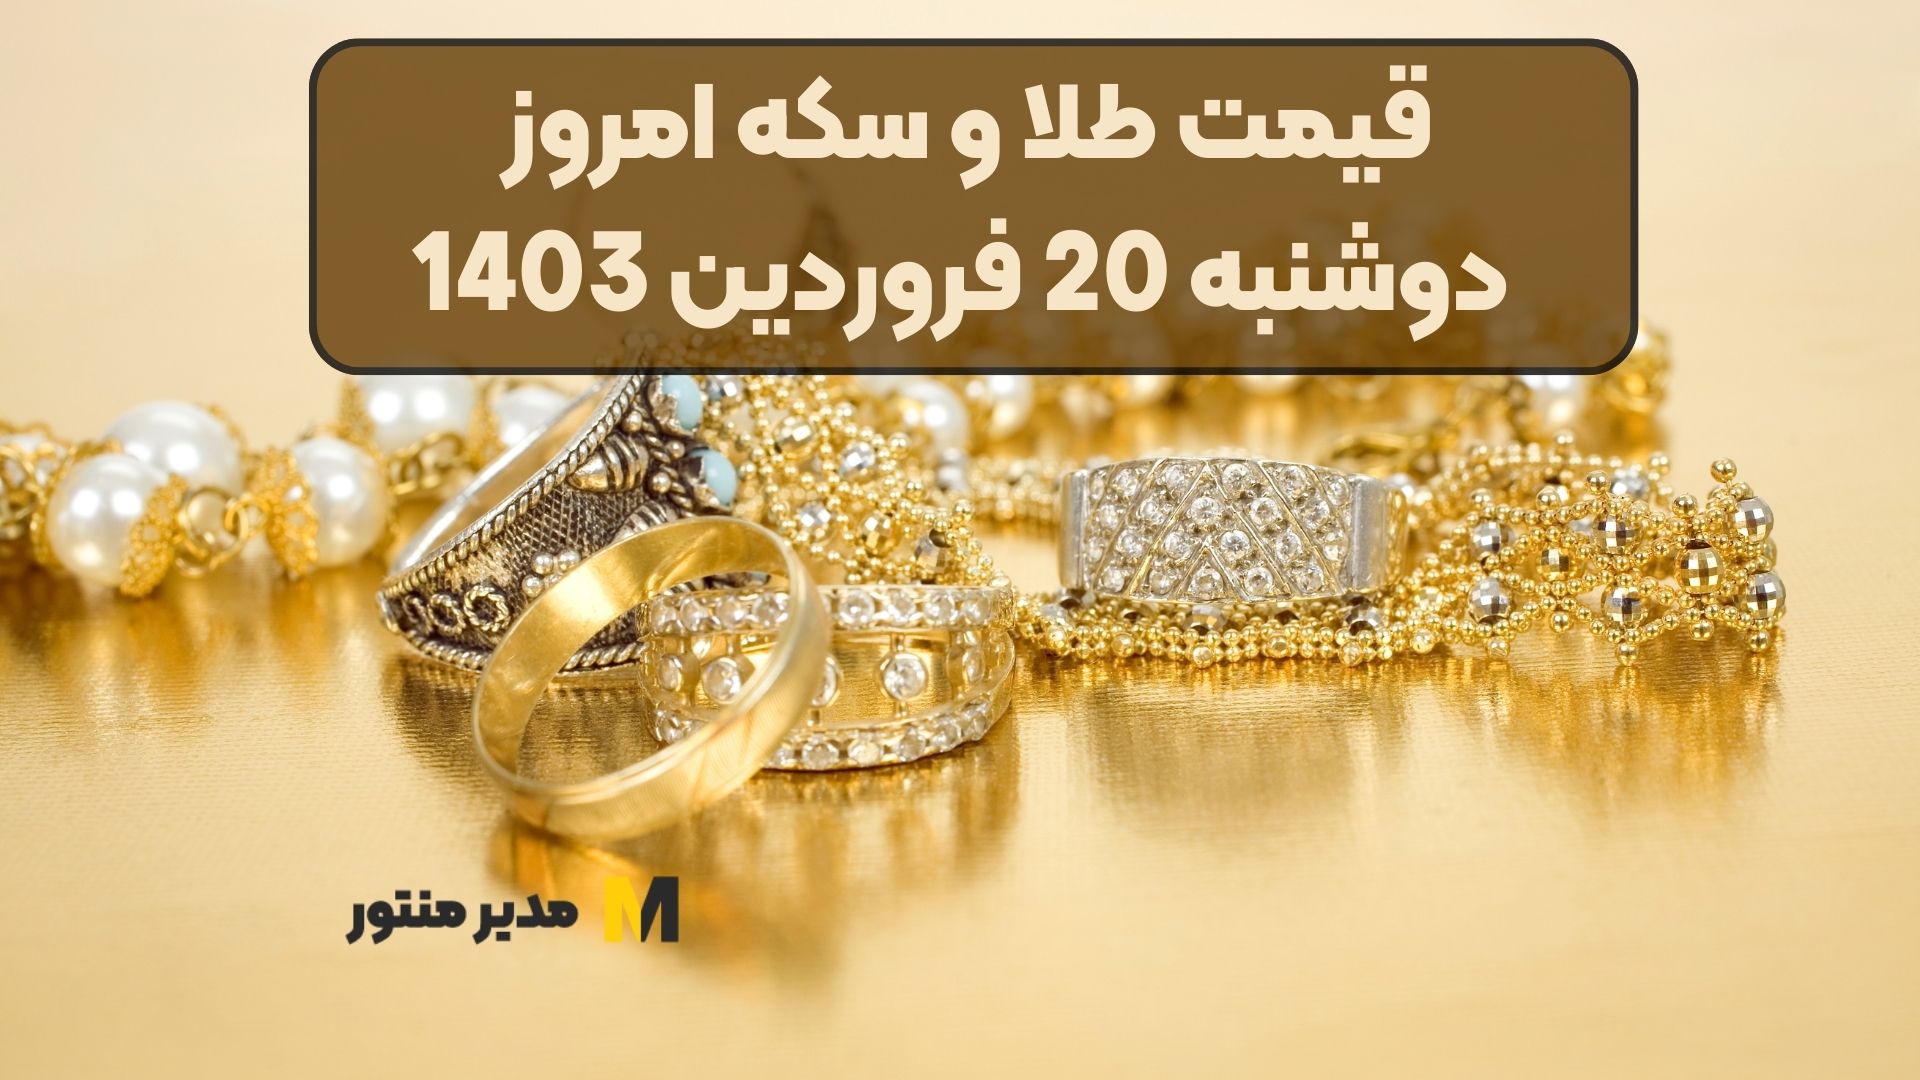 قیمت طلا و سکه امروز دوشنبه 20 فروردین 1403